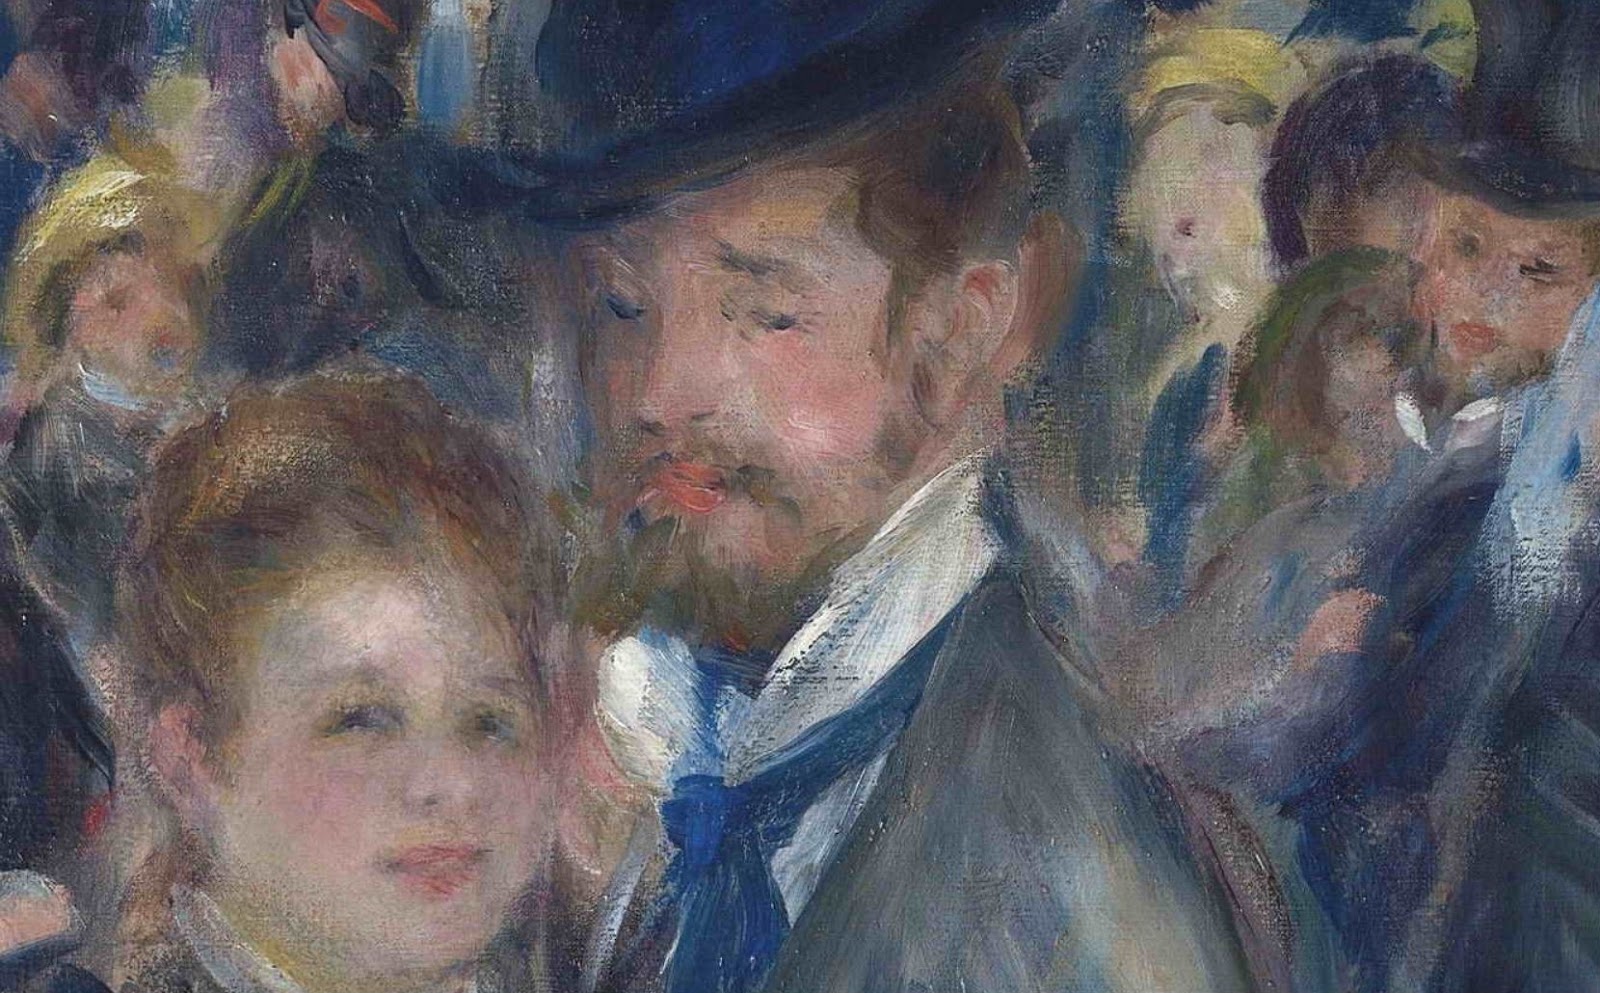 Pierre+Auguste+Renoir-1841-1-19 (438).JPG